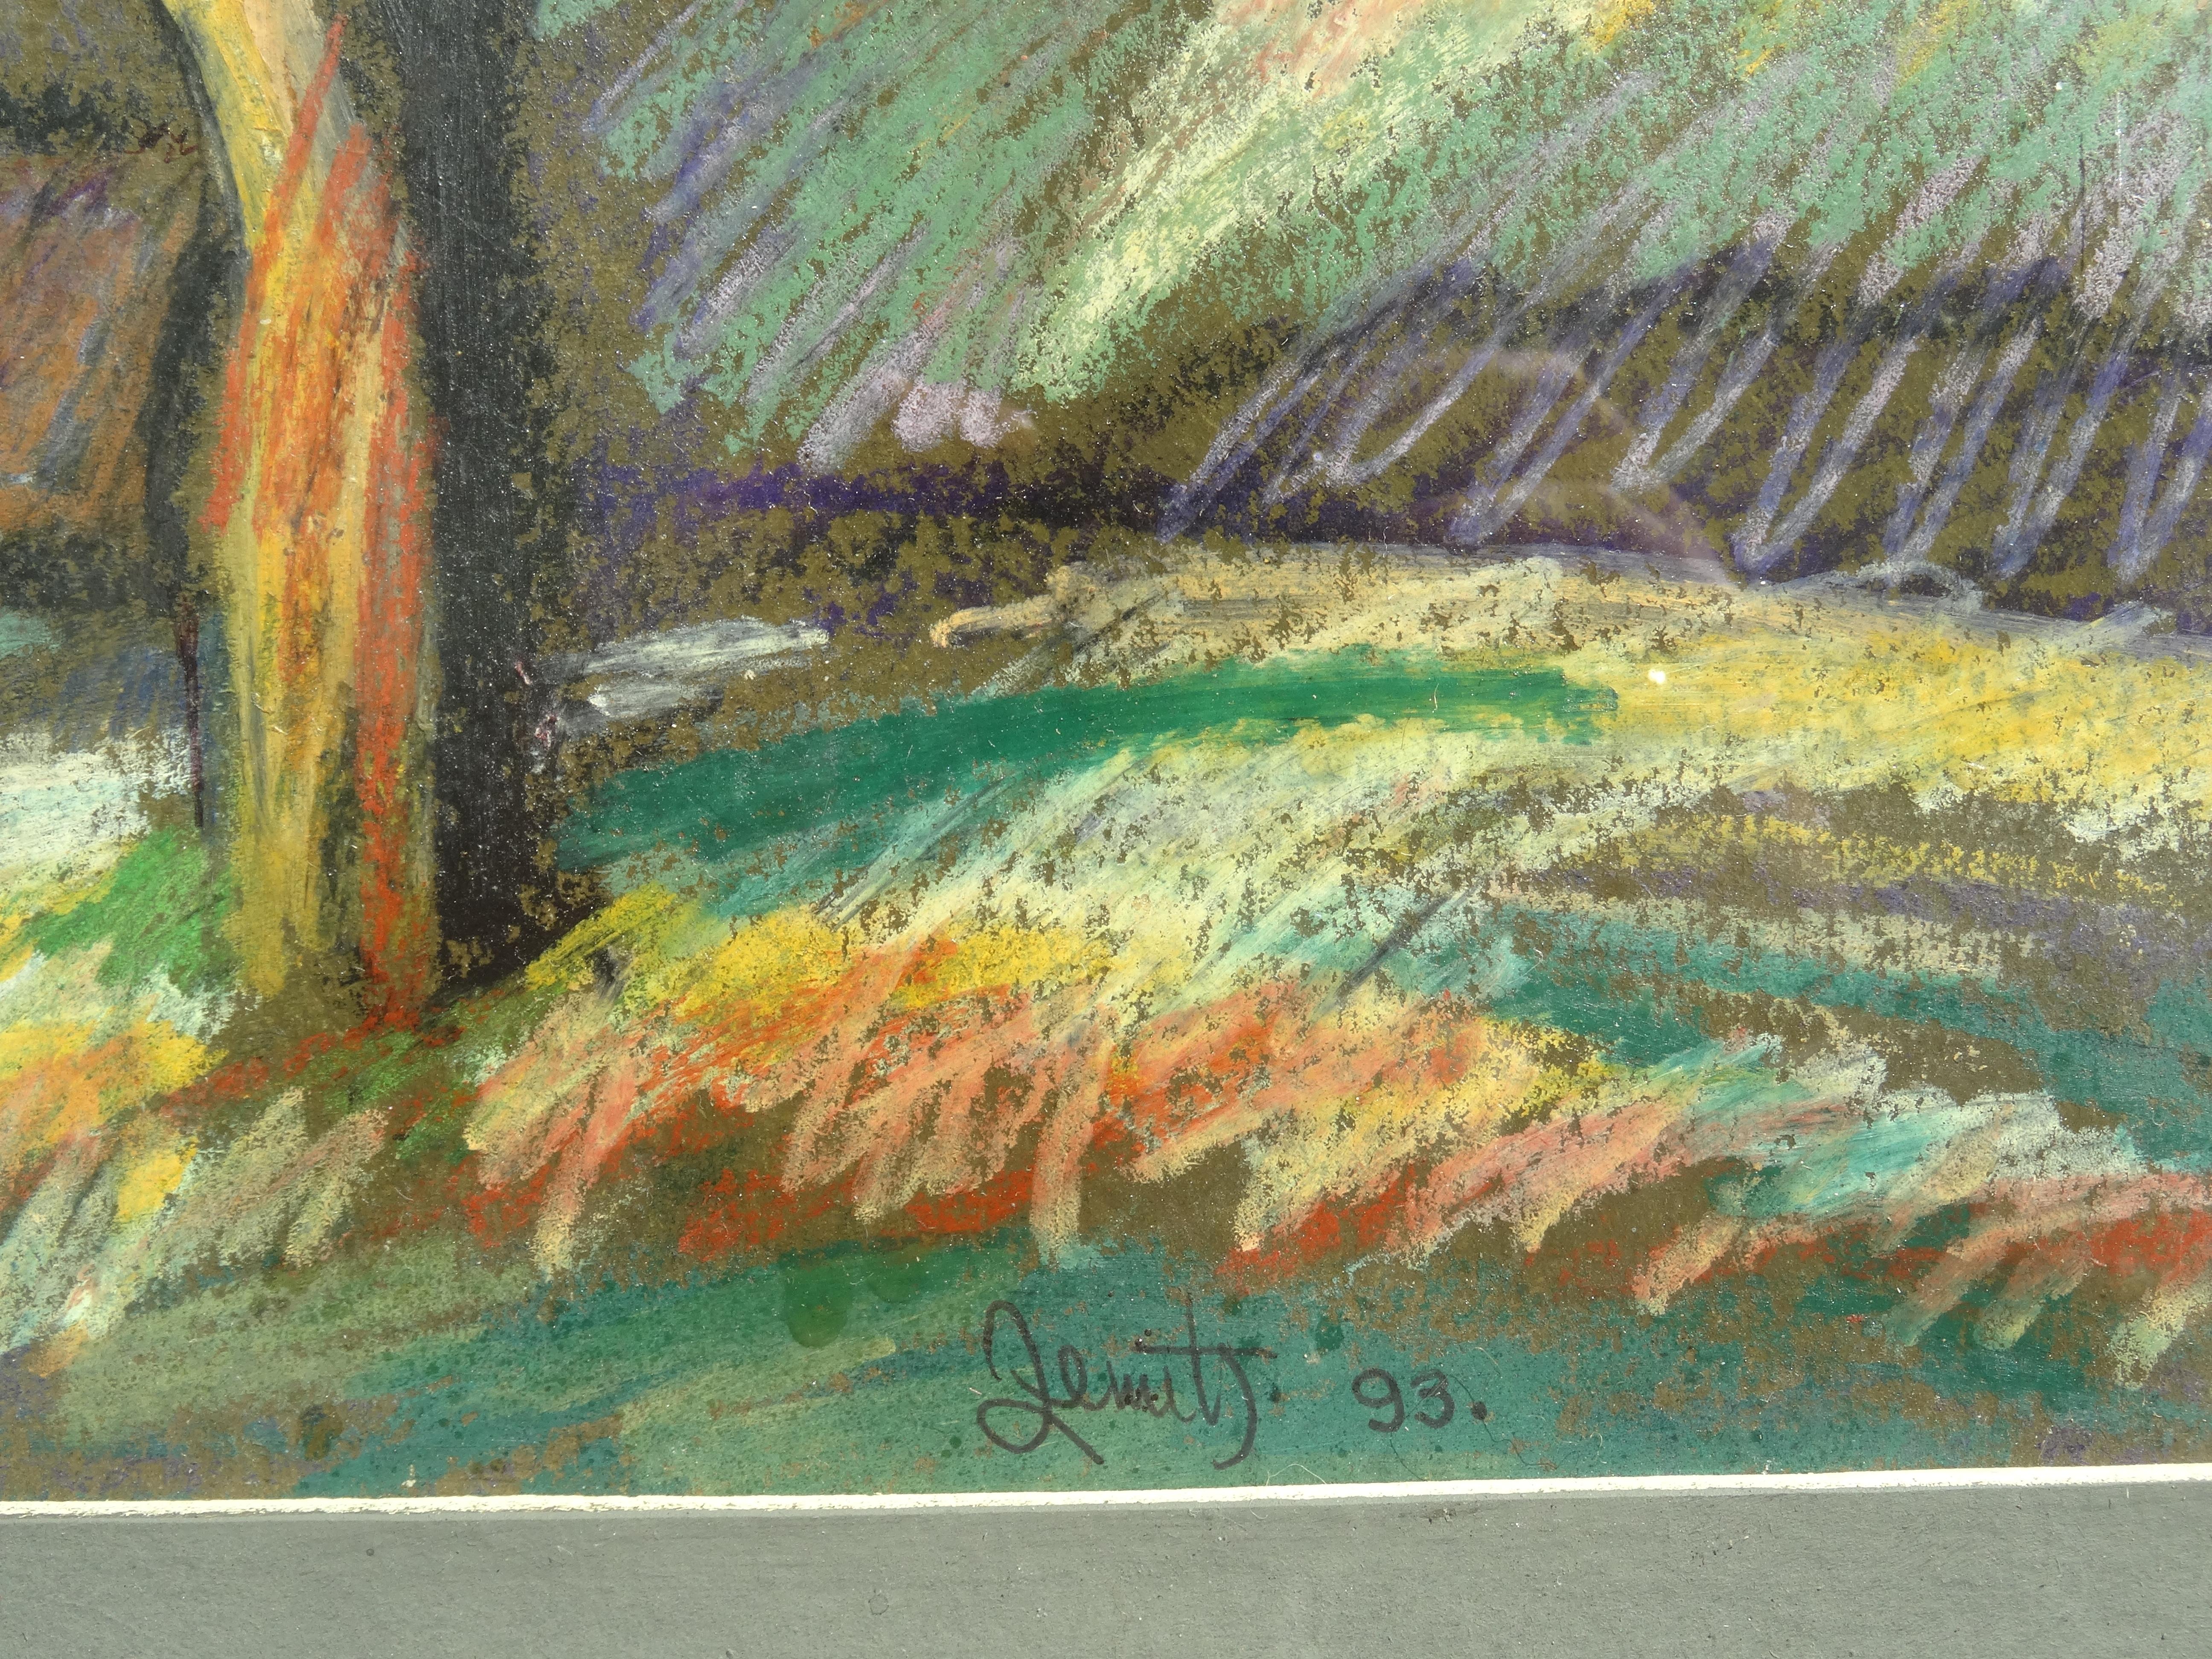 journée ensoleillée d'automne. 1993. Papier, pastel, 30x40 cm - Réalisme Painting par Janis Zemitis